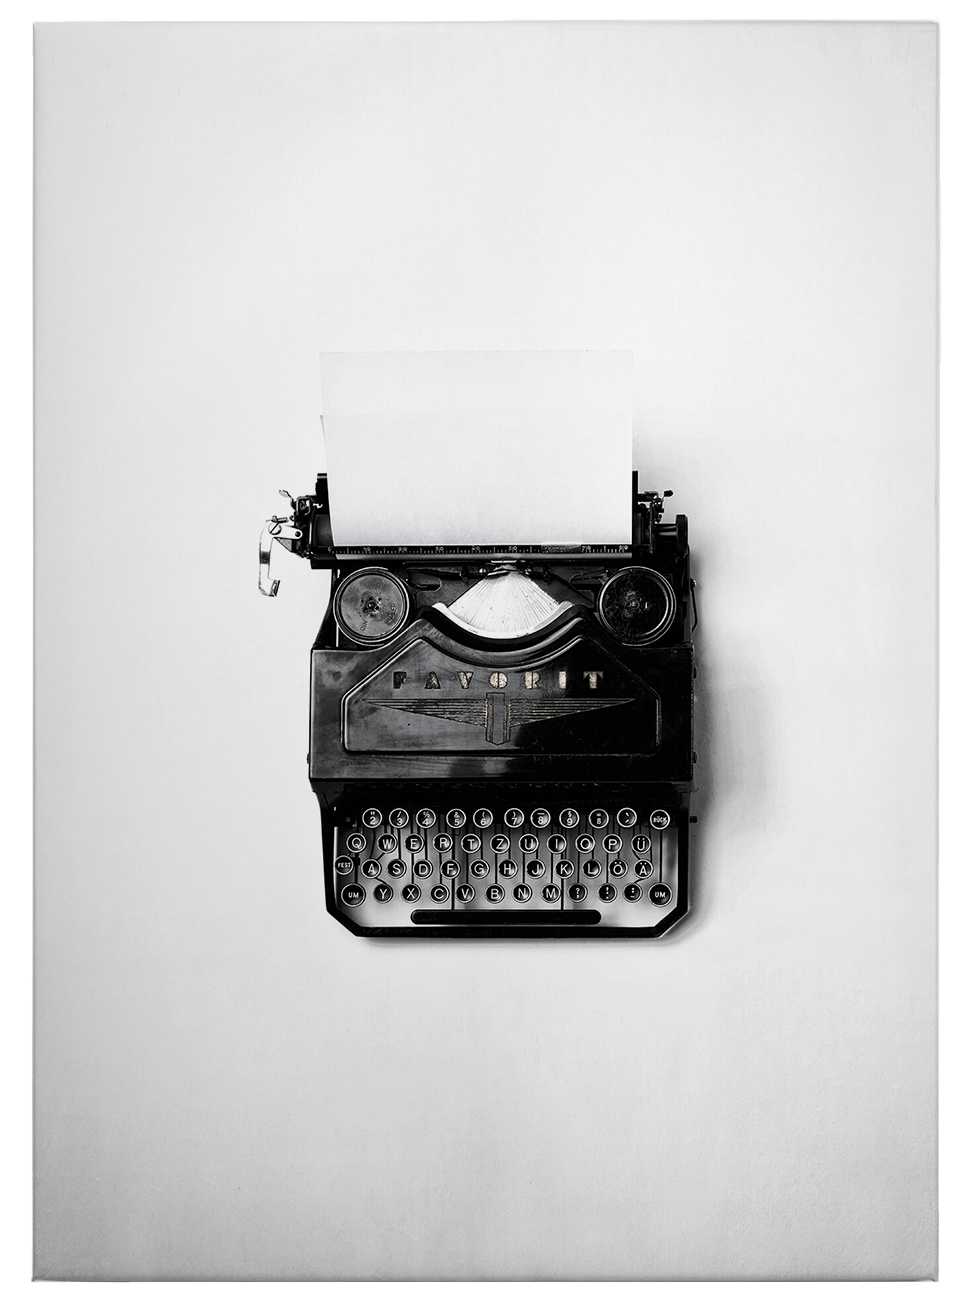             Leinwandbild Schreibmaschine Retro – 0,50 m x 0,70 m
        